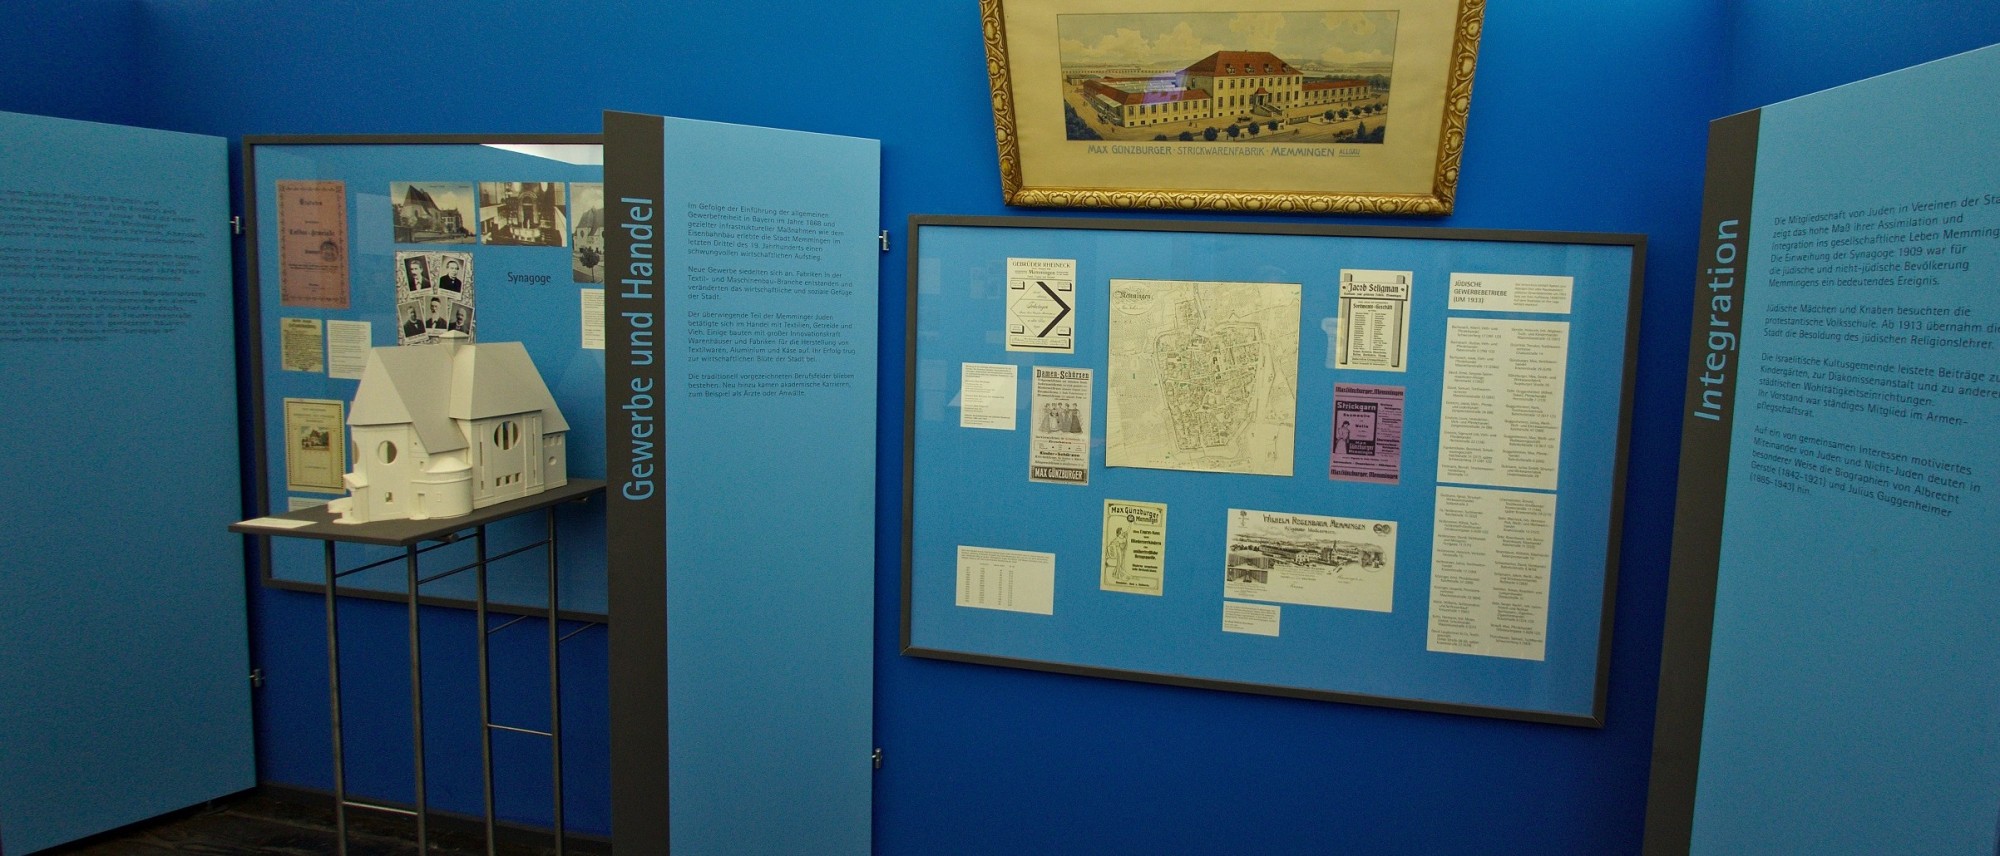 Teil einer Ausstellung zum Jüdischen Leben in Memmingen mit archivalischen Dokumenten und einem Synagogenmodell. Führt zur Unterseite &quot;Memmingen&quot;.